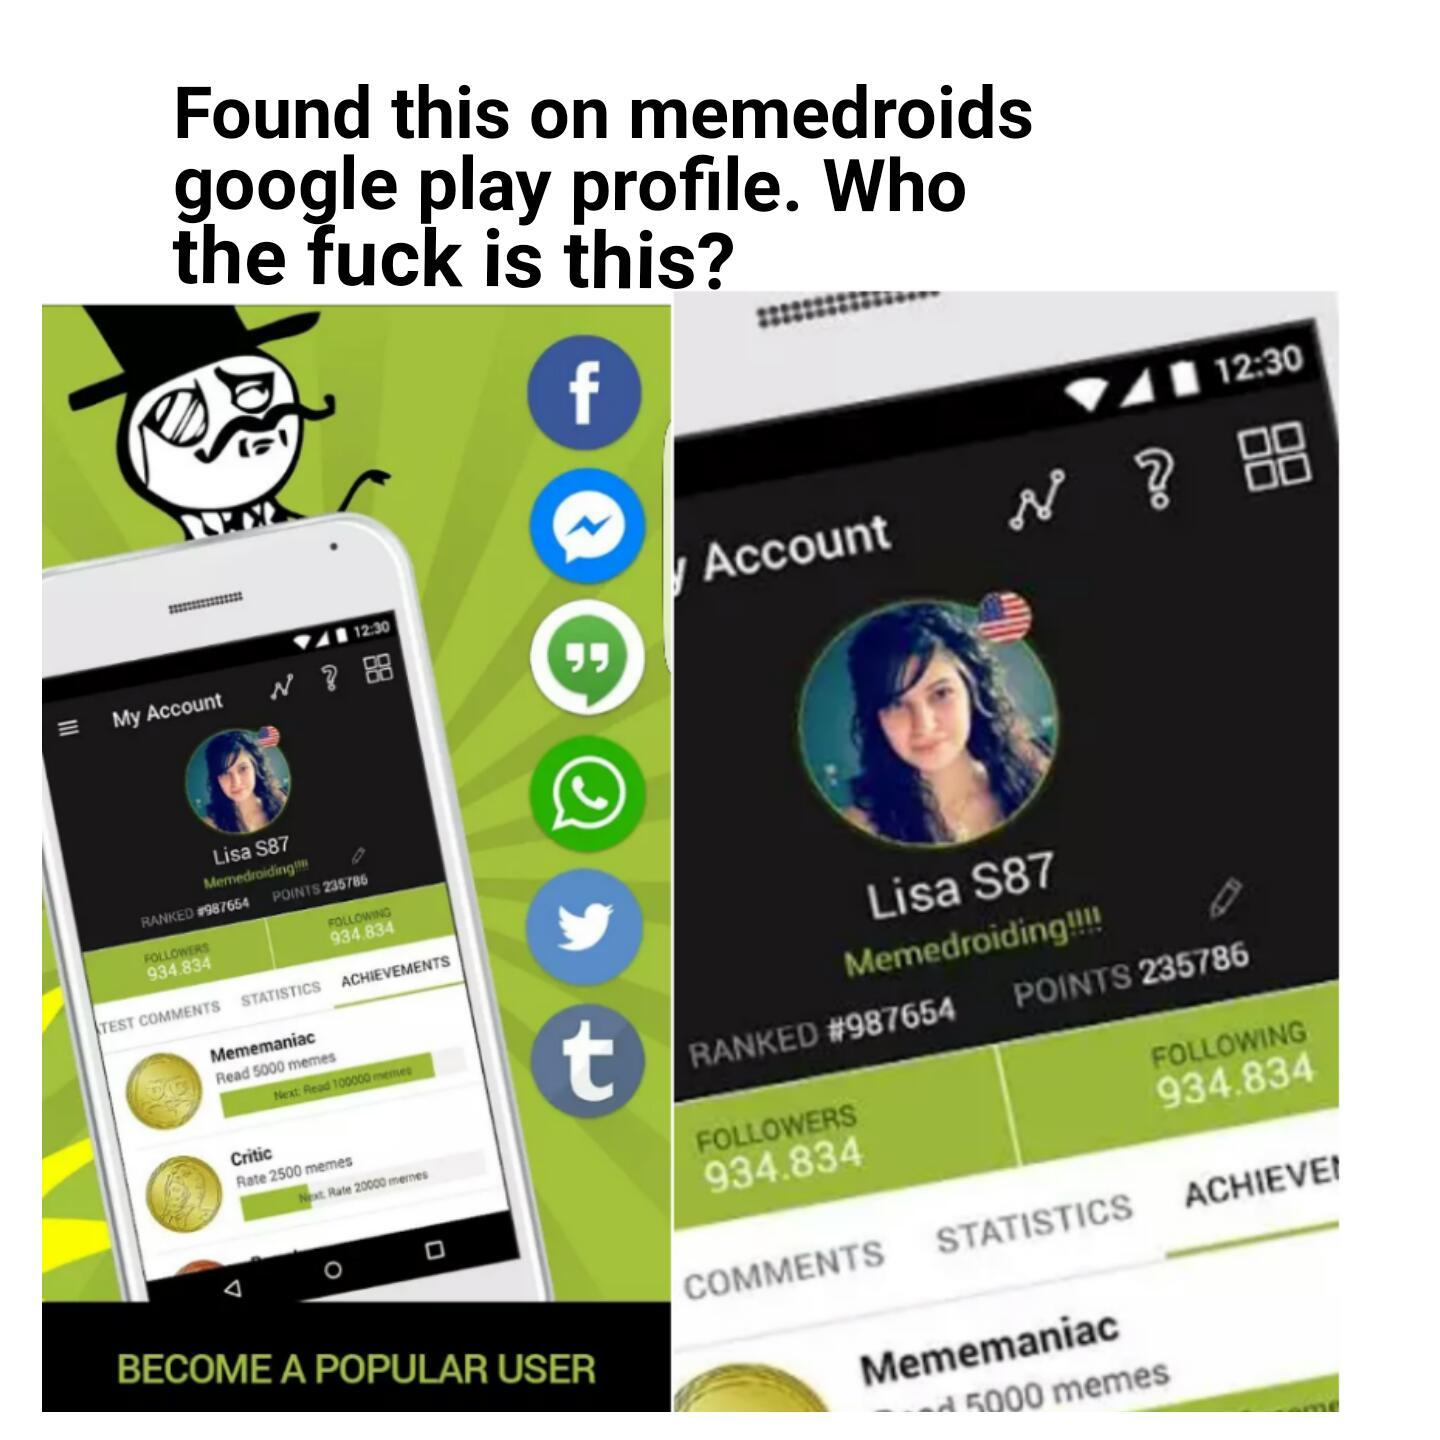 The legend of Lisa S87 - meme